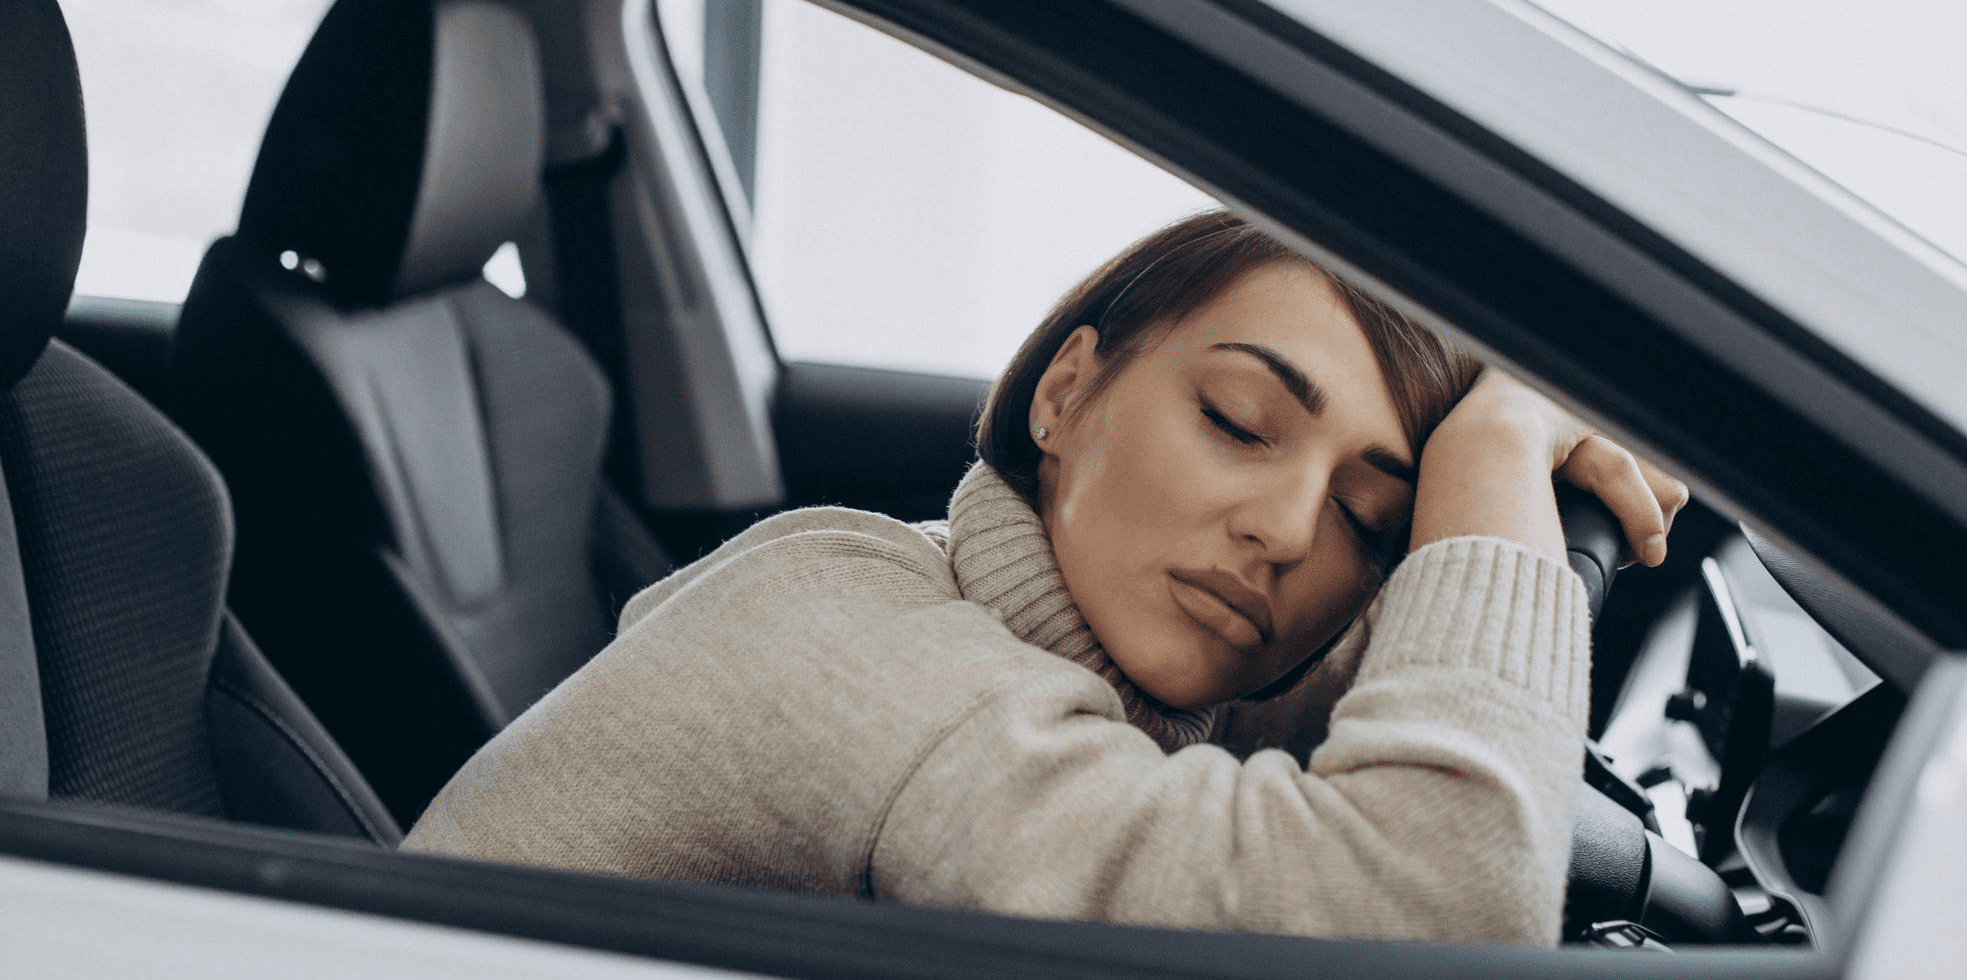 خوابیدن روی فرمون ماشین - خوابیدن در ماشین هنگام سفر